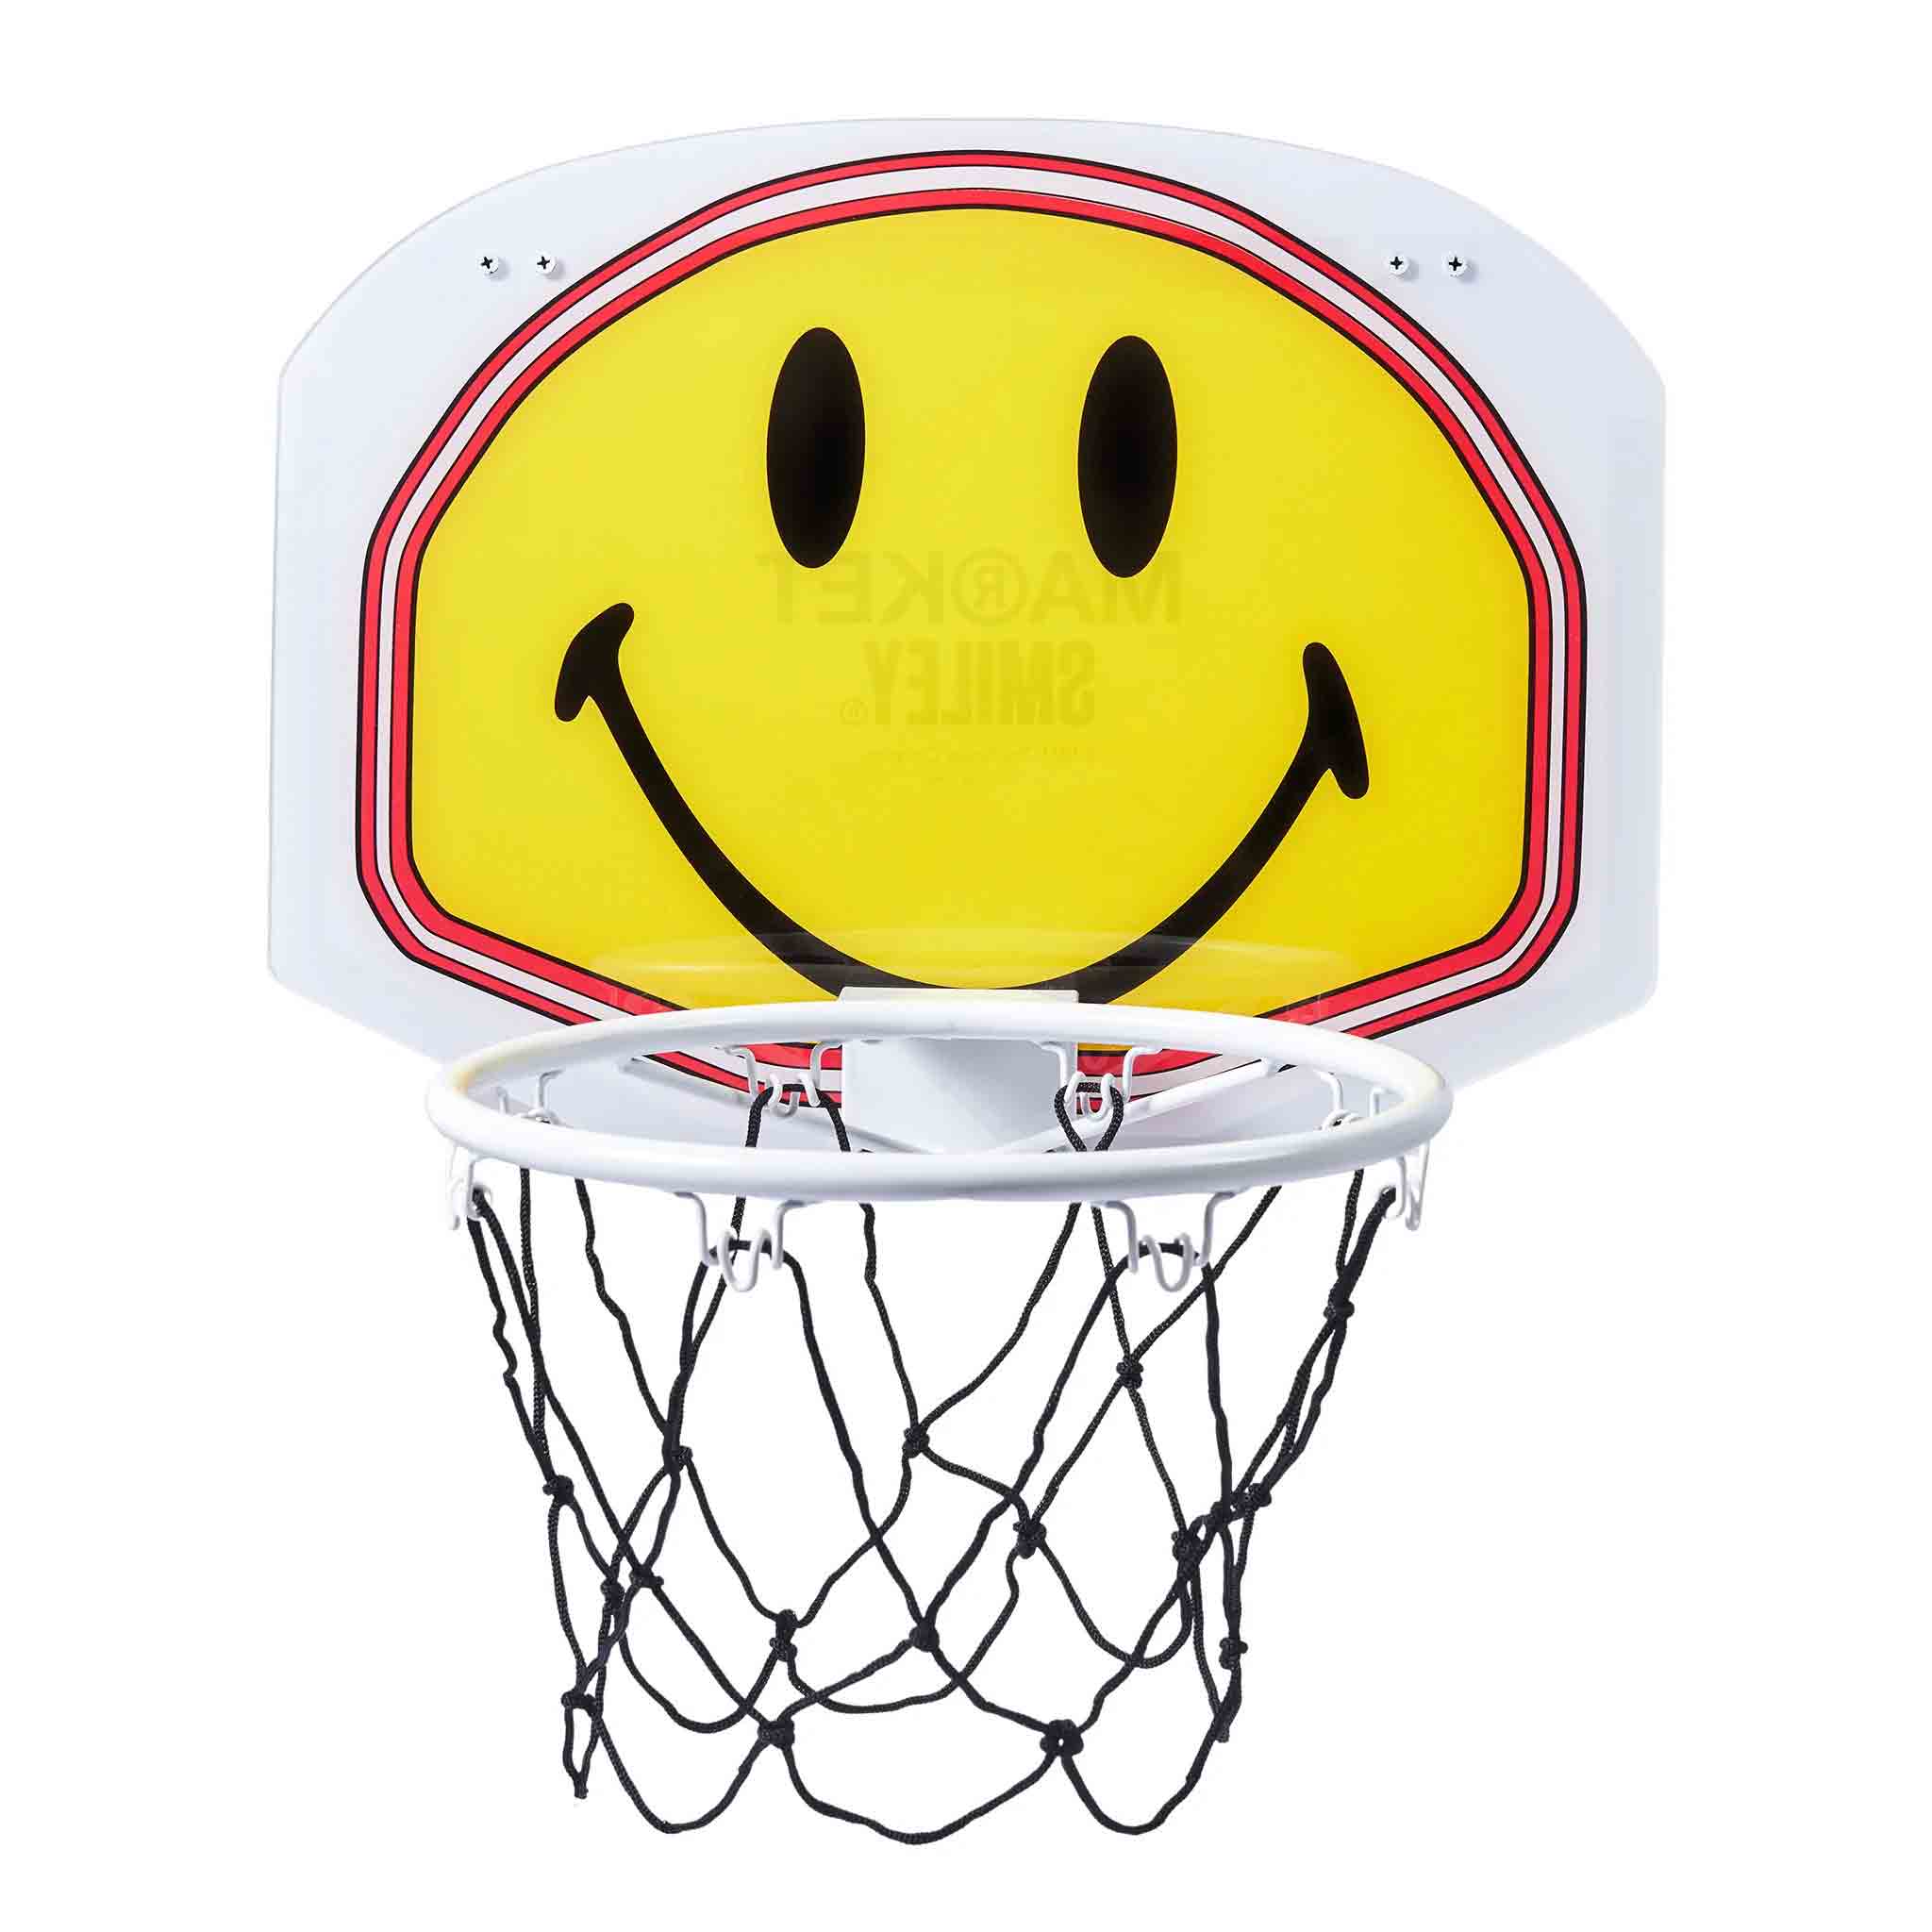 Market Smiley Mini Basketball Hoop Yellow